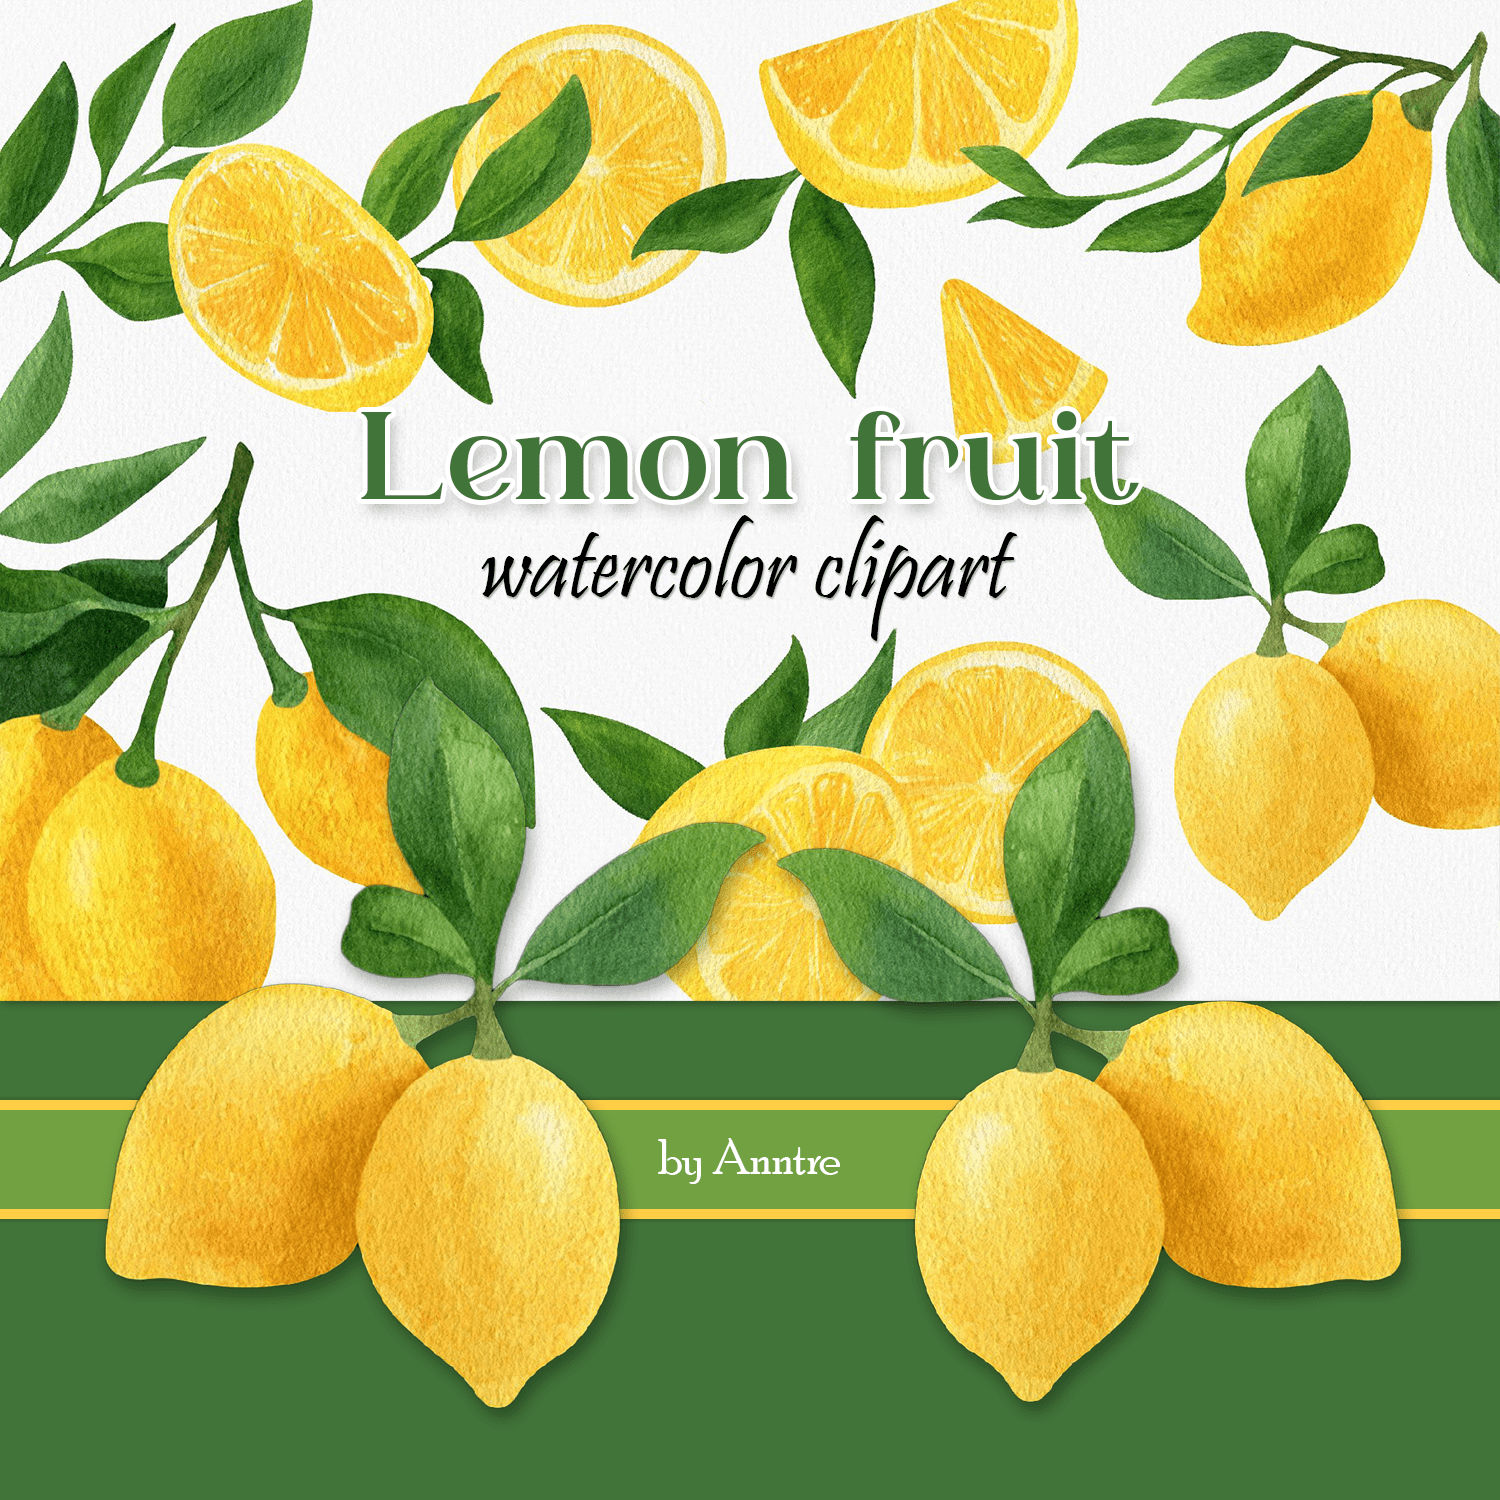 Lemon fruit watercolor clipart cover.